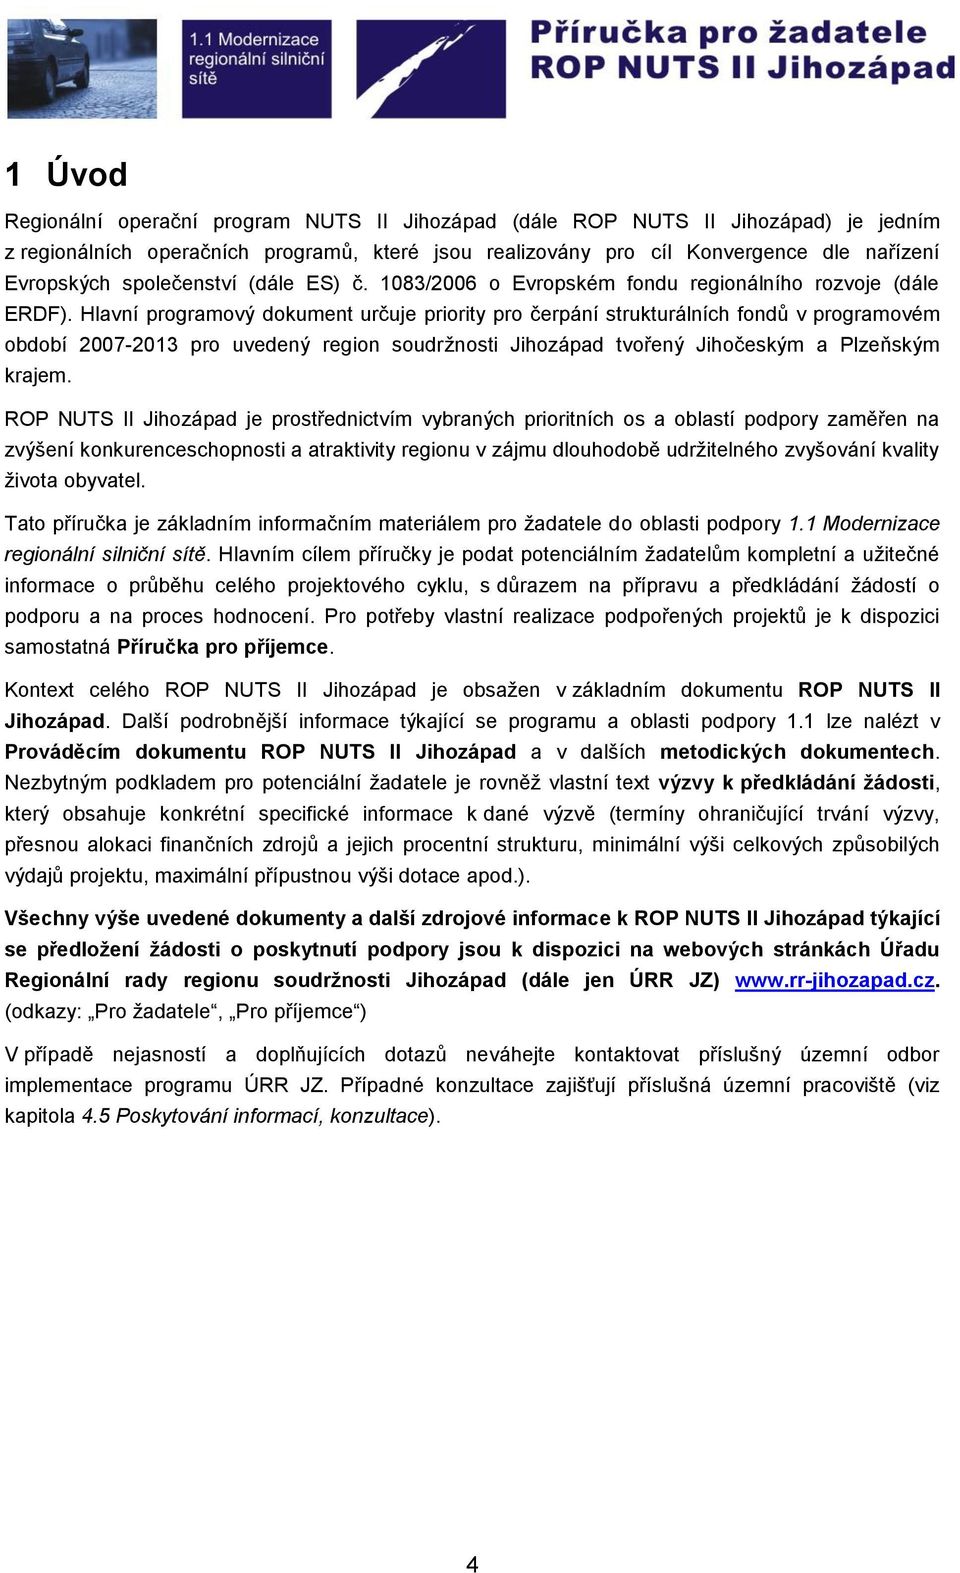 Hlavní programový dokument určuje priority pro čerpání strukturálních fondů v programovém období 2007-2013 pro uvedený region soudržnosti Jihozápad tvořený Jihočeským a Plzeňským krajem.